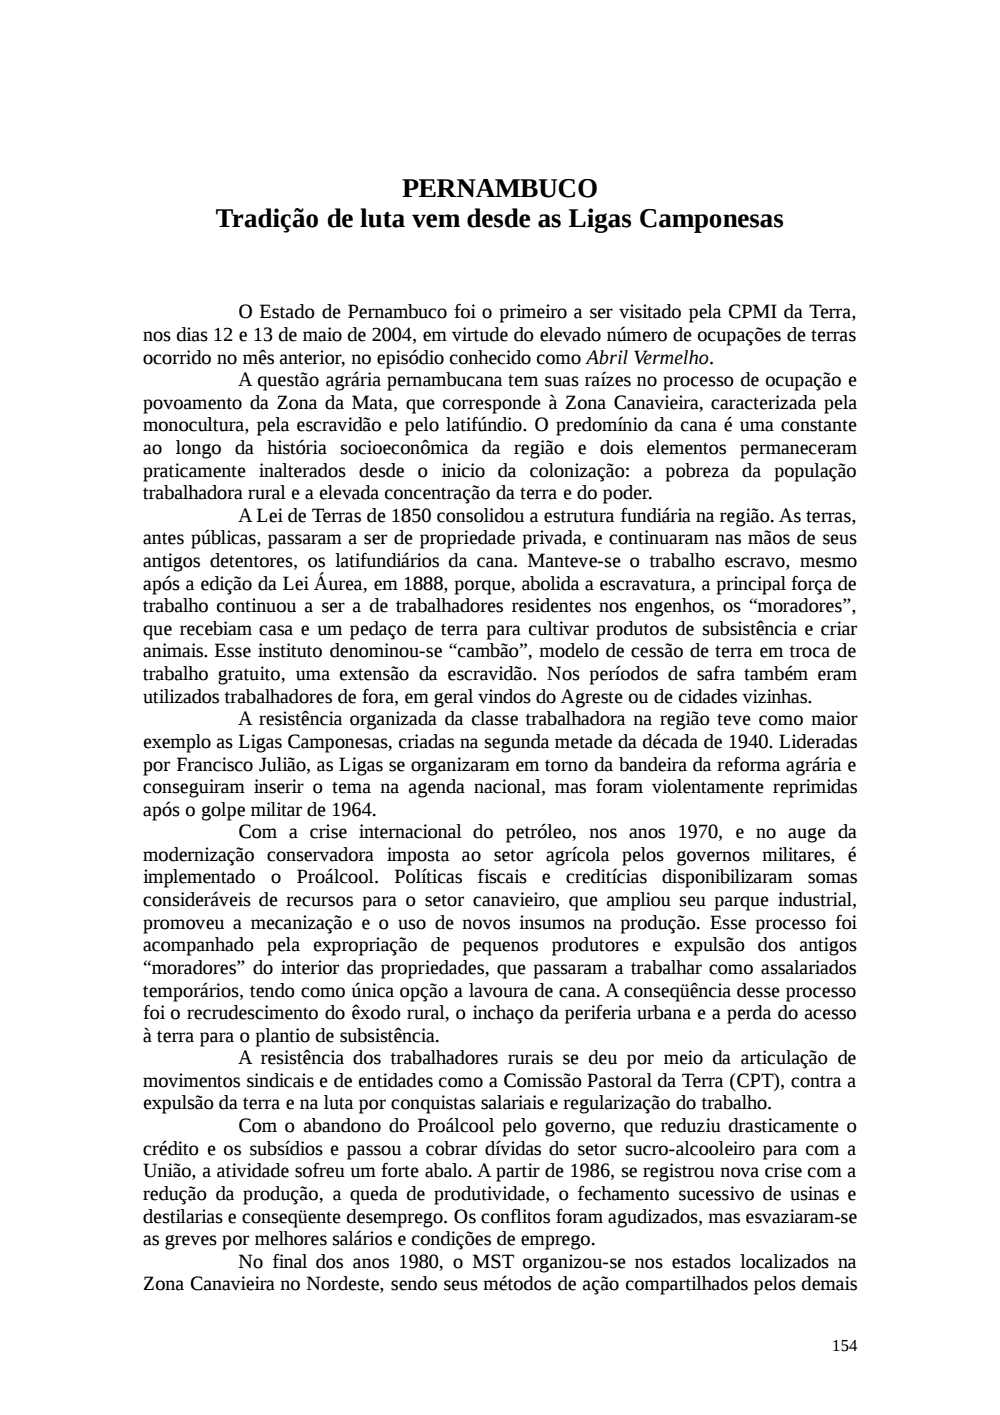 Page 154 from Relatório final da comissão